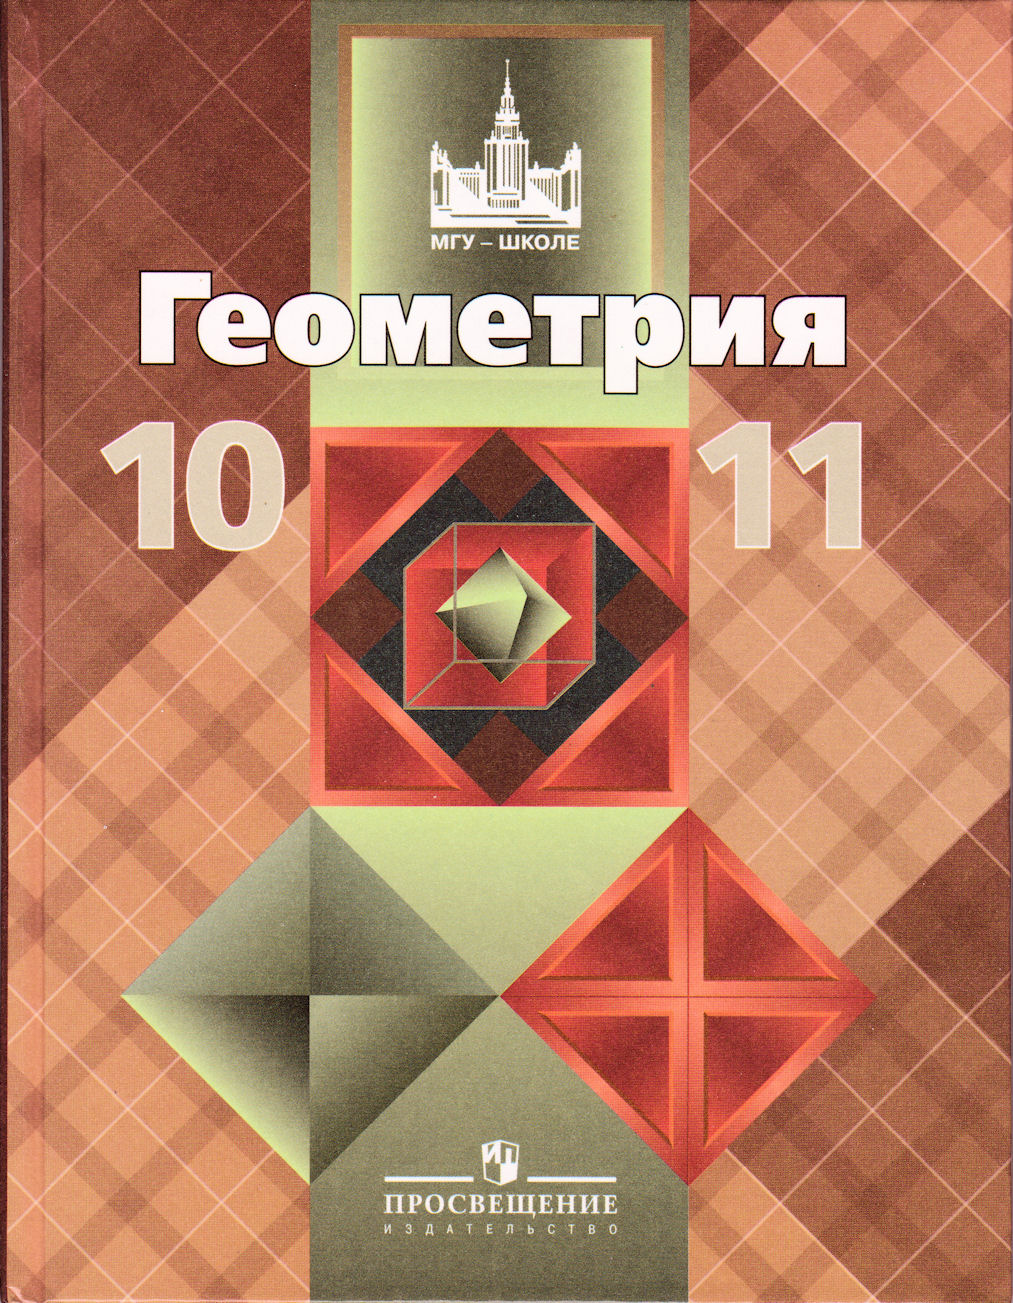 Геометрия 10-11 класс атанасян 3 издание просвещение 1990 год